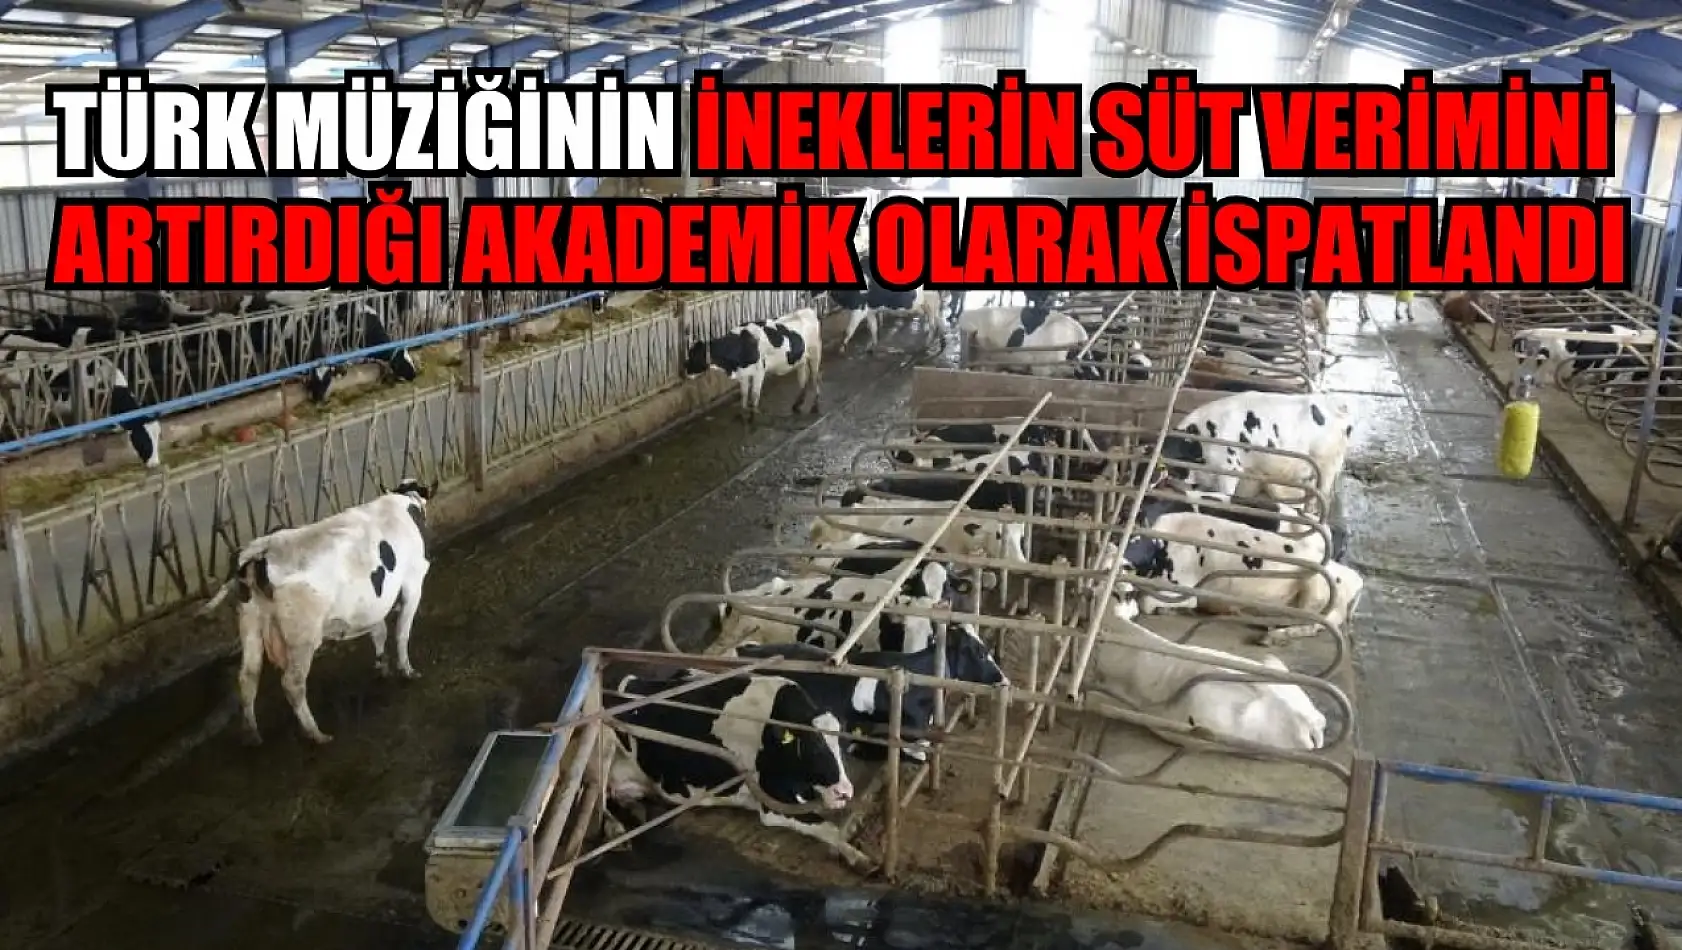 Türk müziğinin ineklerin süt verimini artırdığı akademik olarak ispatlandı